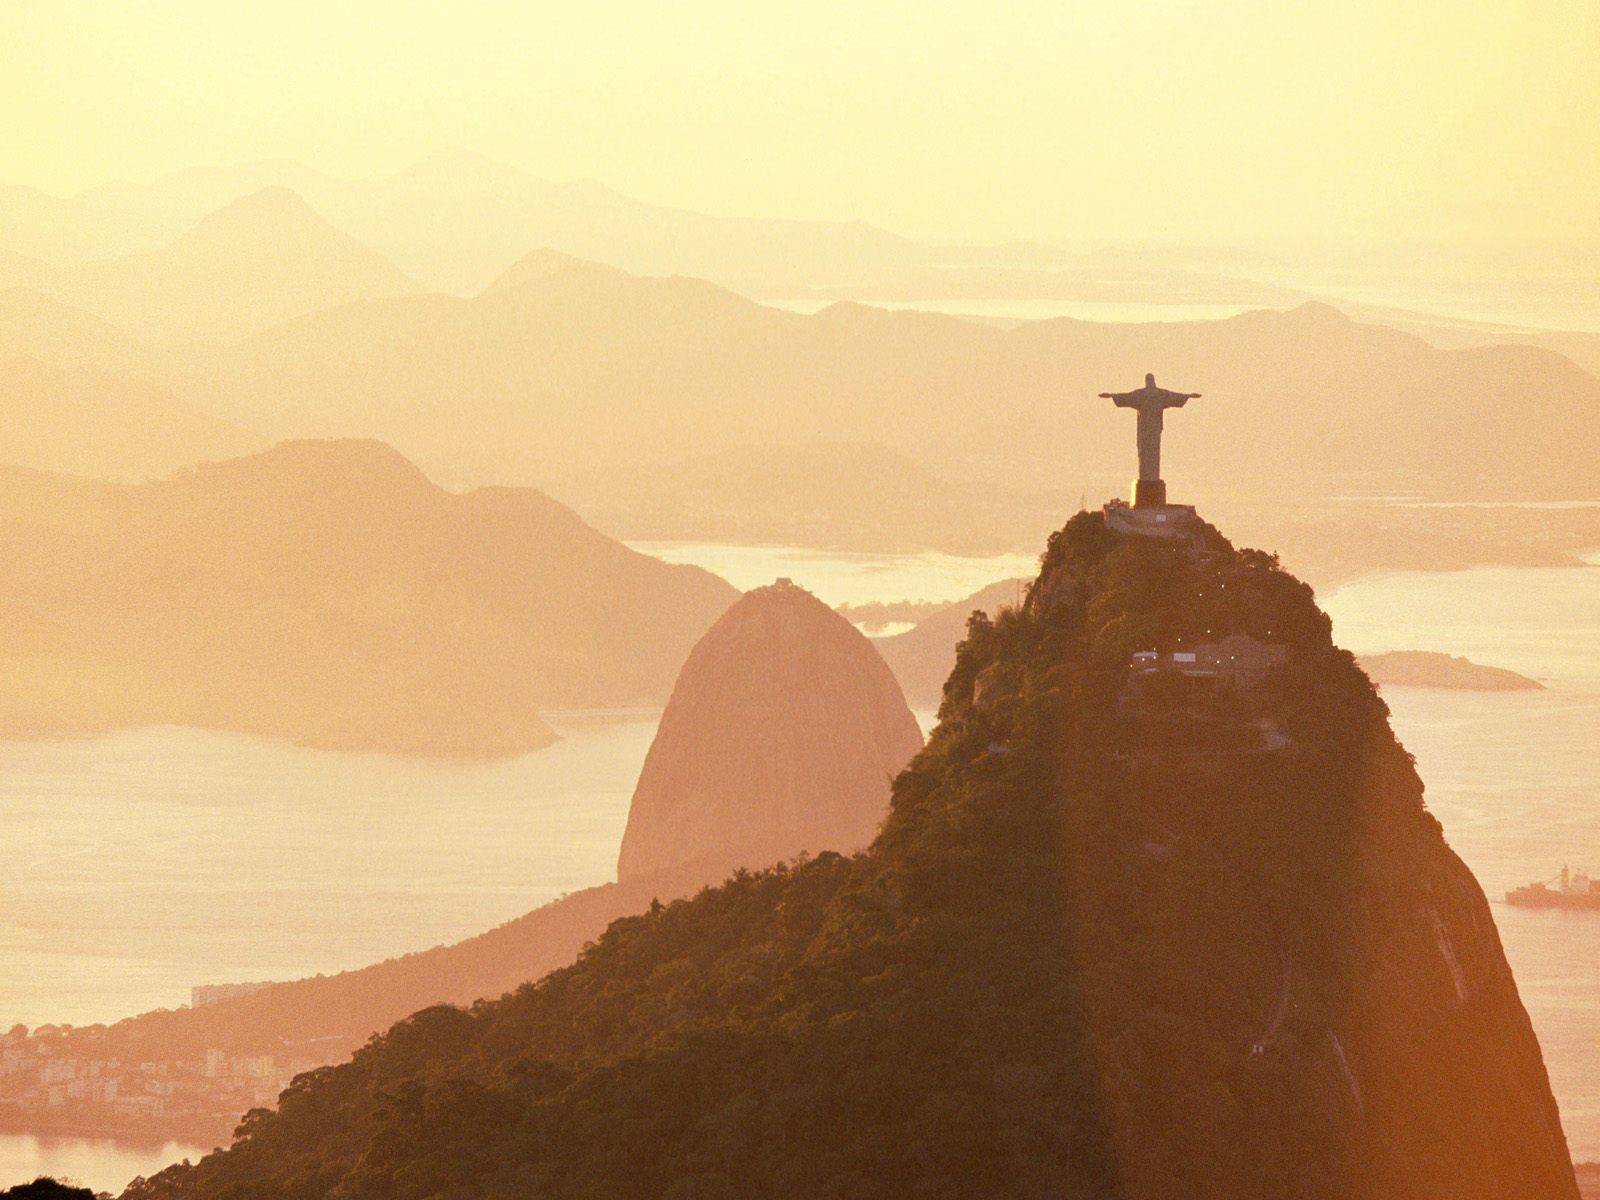 Corcovado Mountain and Sugarloaf Mountain - Rio de Janeiro, Brazil